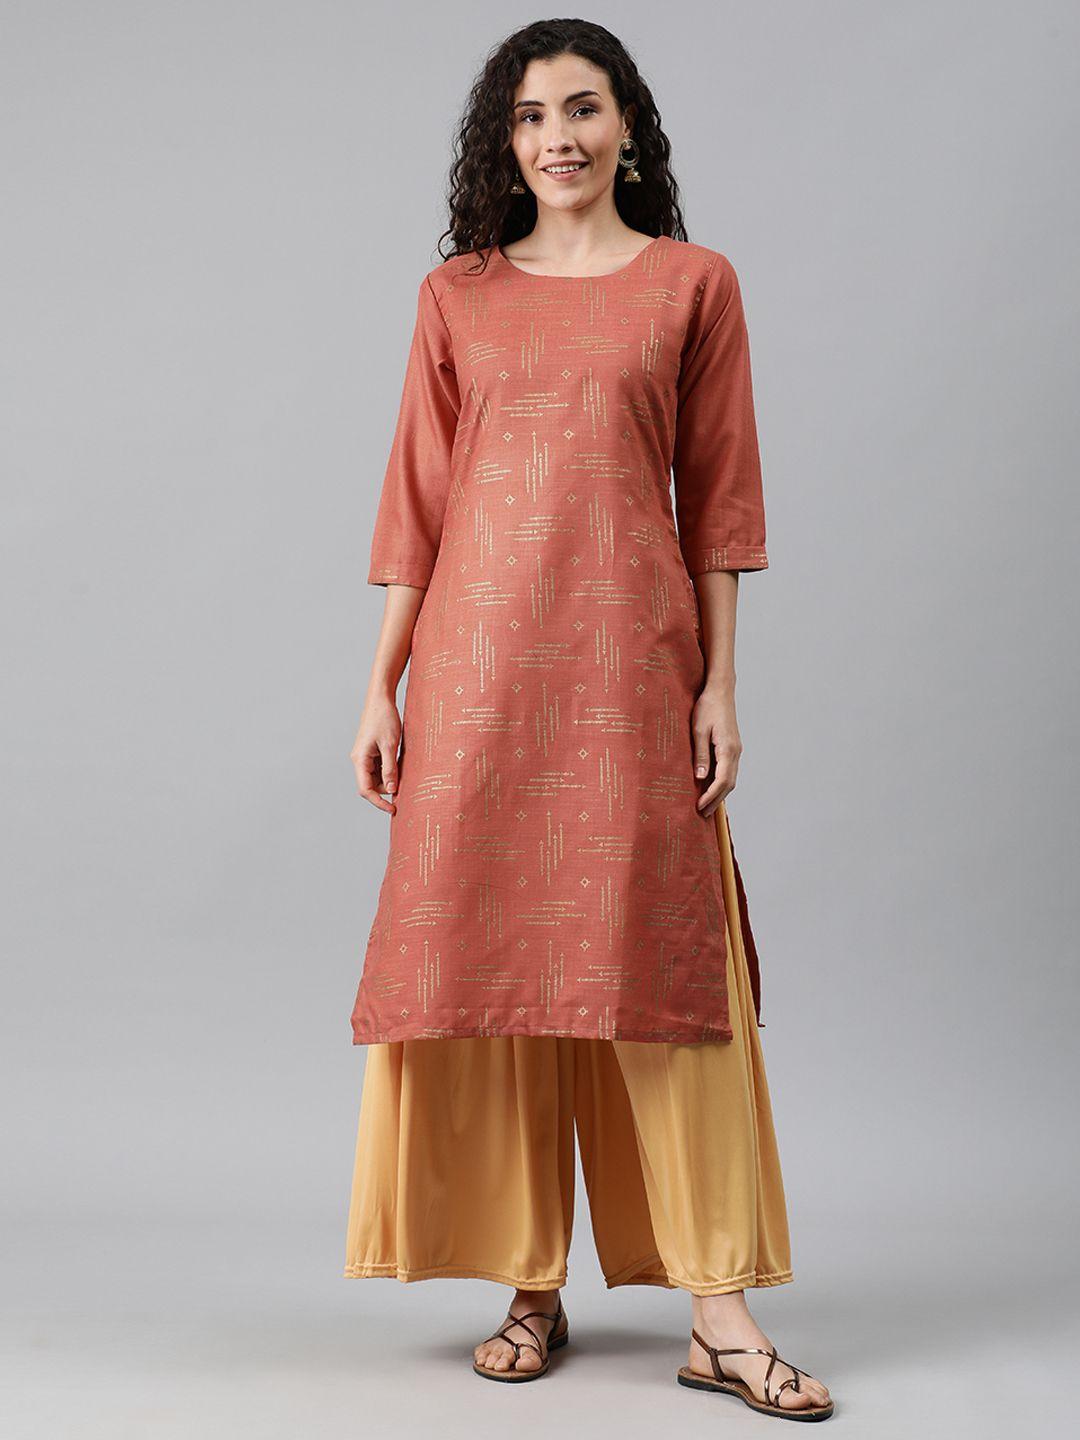 anyuka women brown & gold-toned printed straight kurta